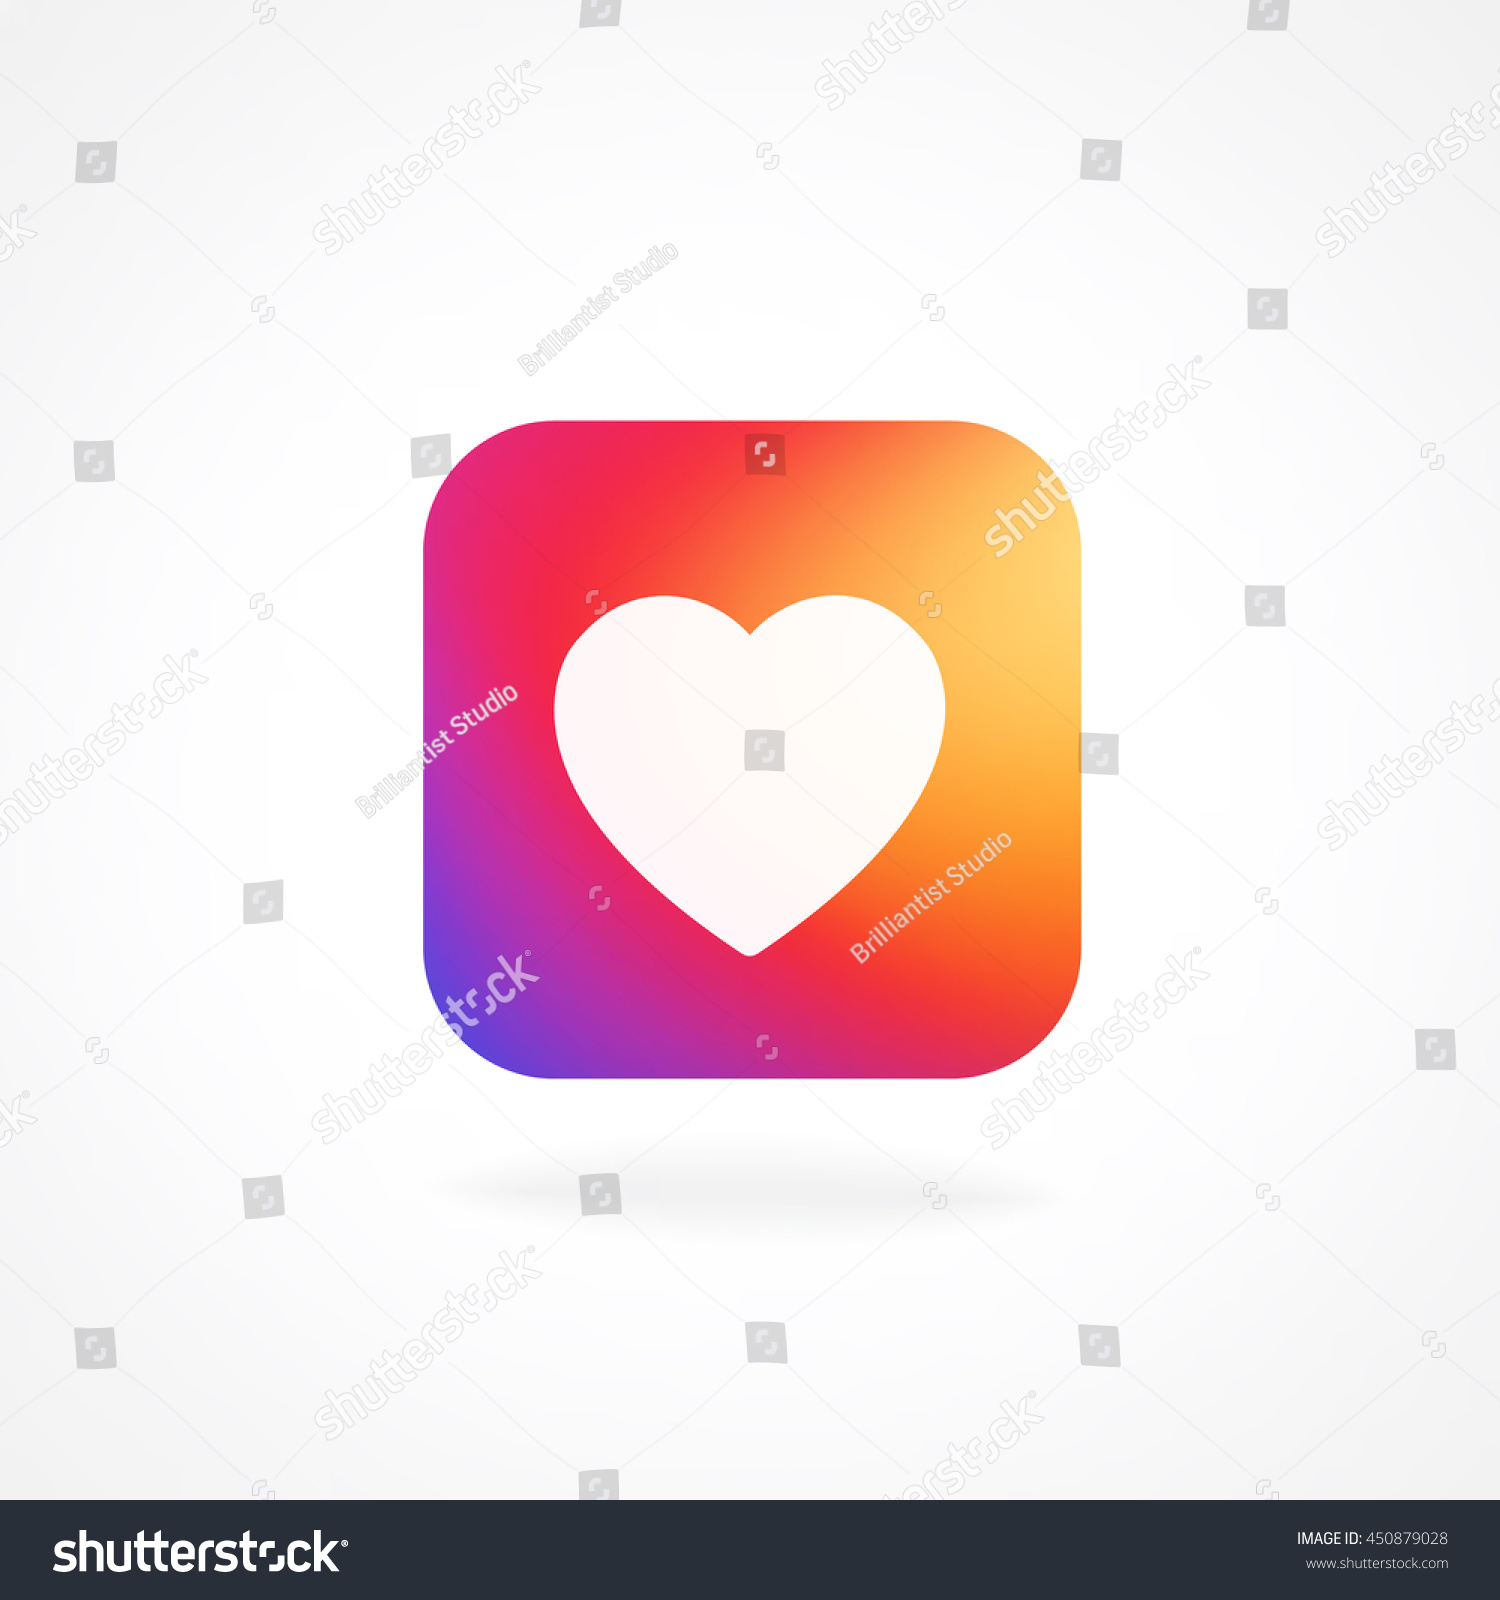 Herz symbol mit app Herz symbol